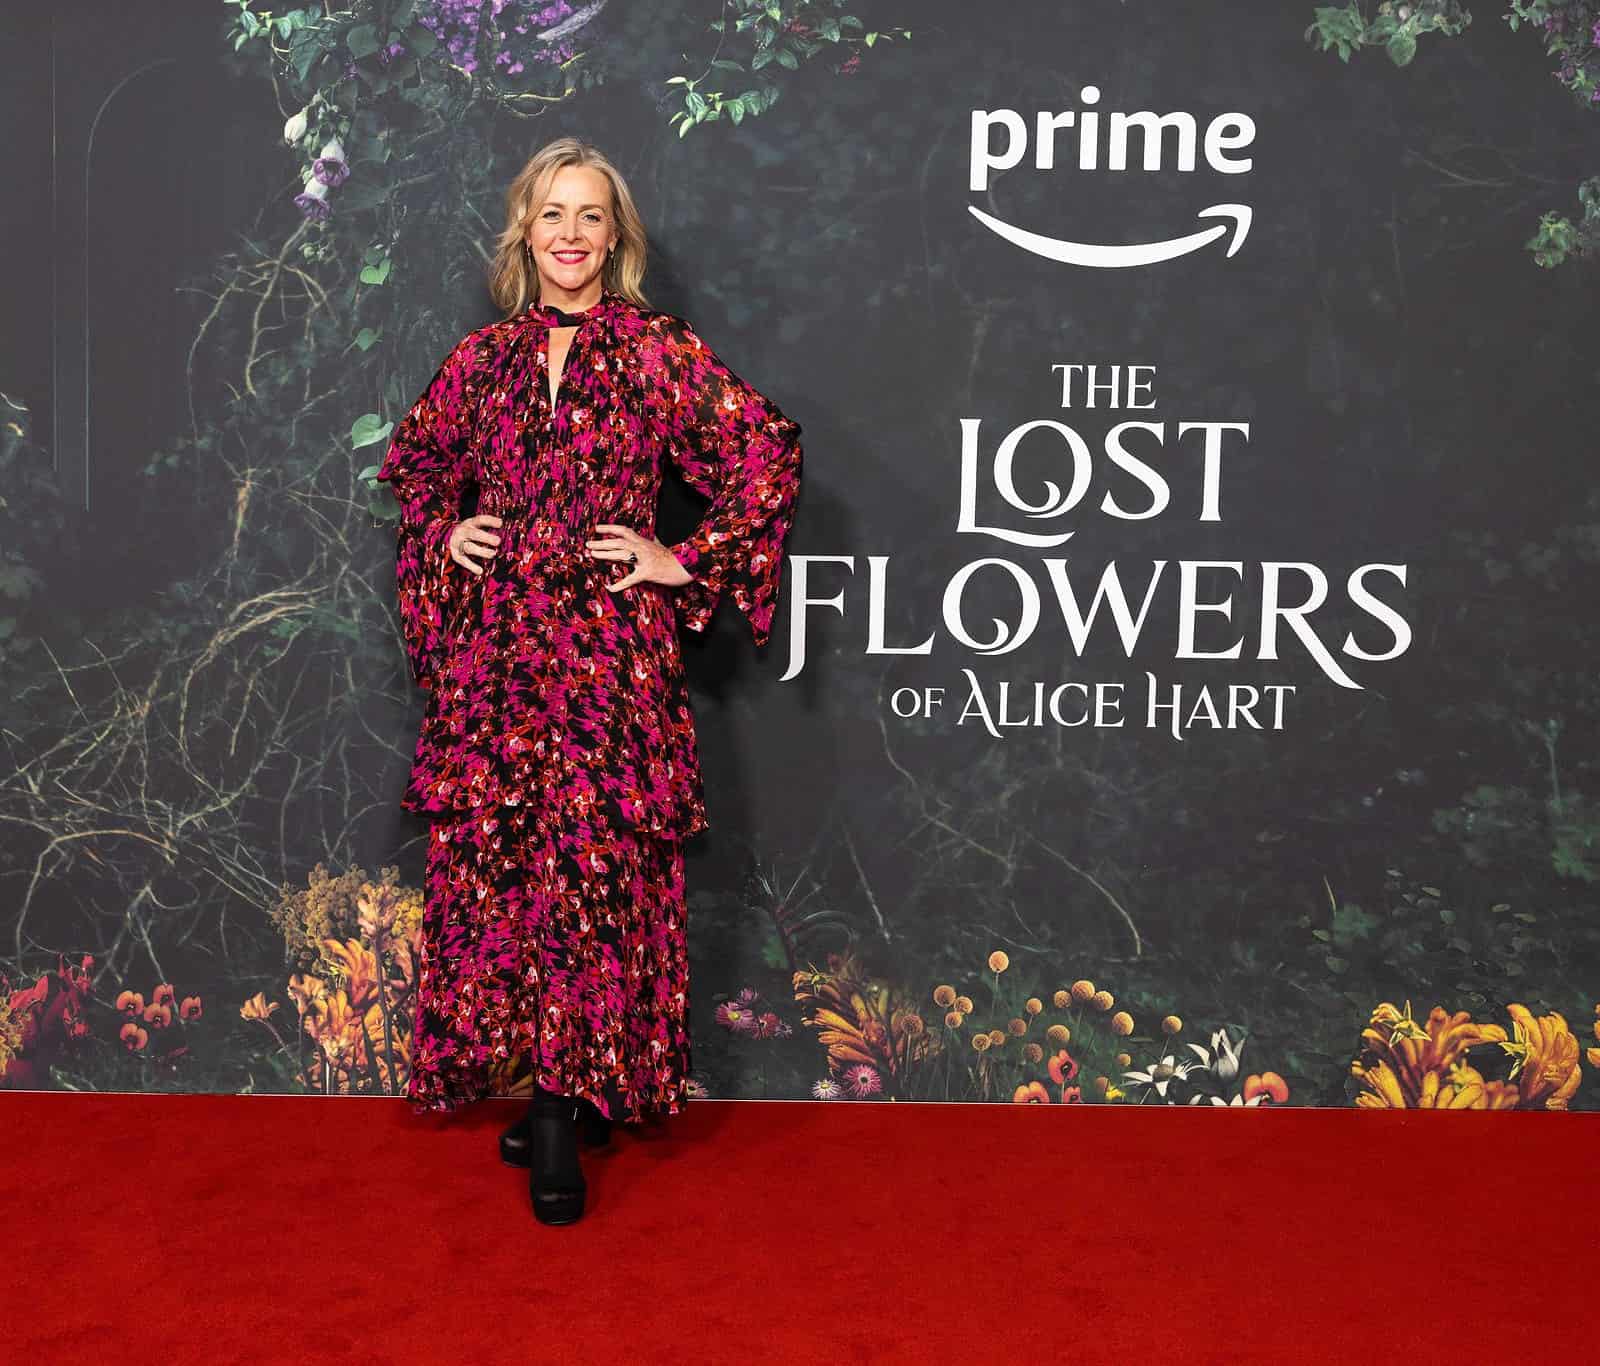 Sarah Lambert. The Lost Flowers of Alice Hart preview screening. Prime Video